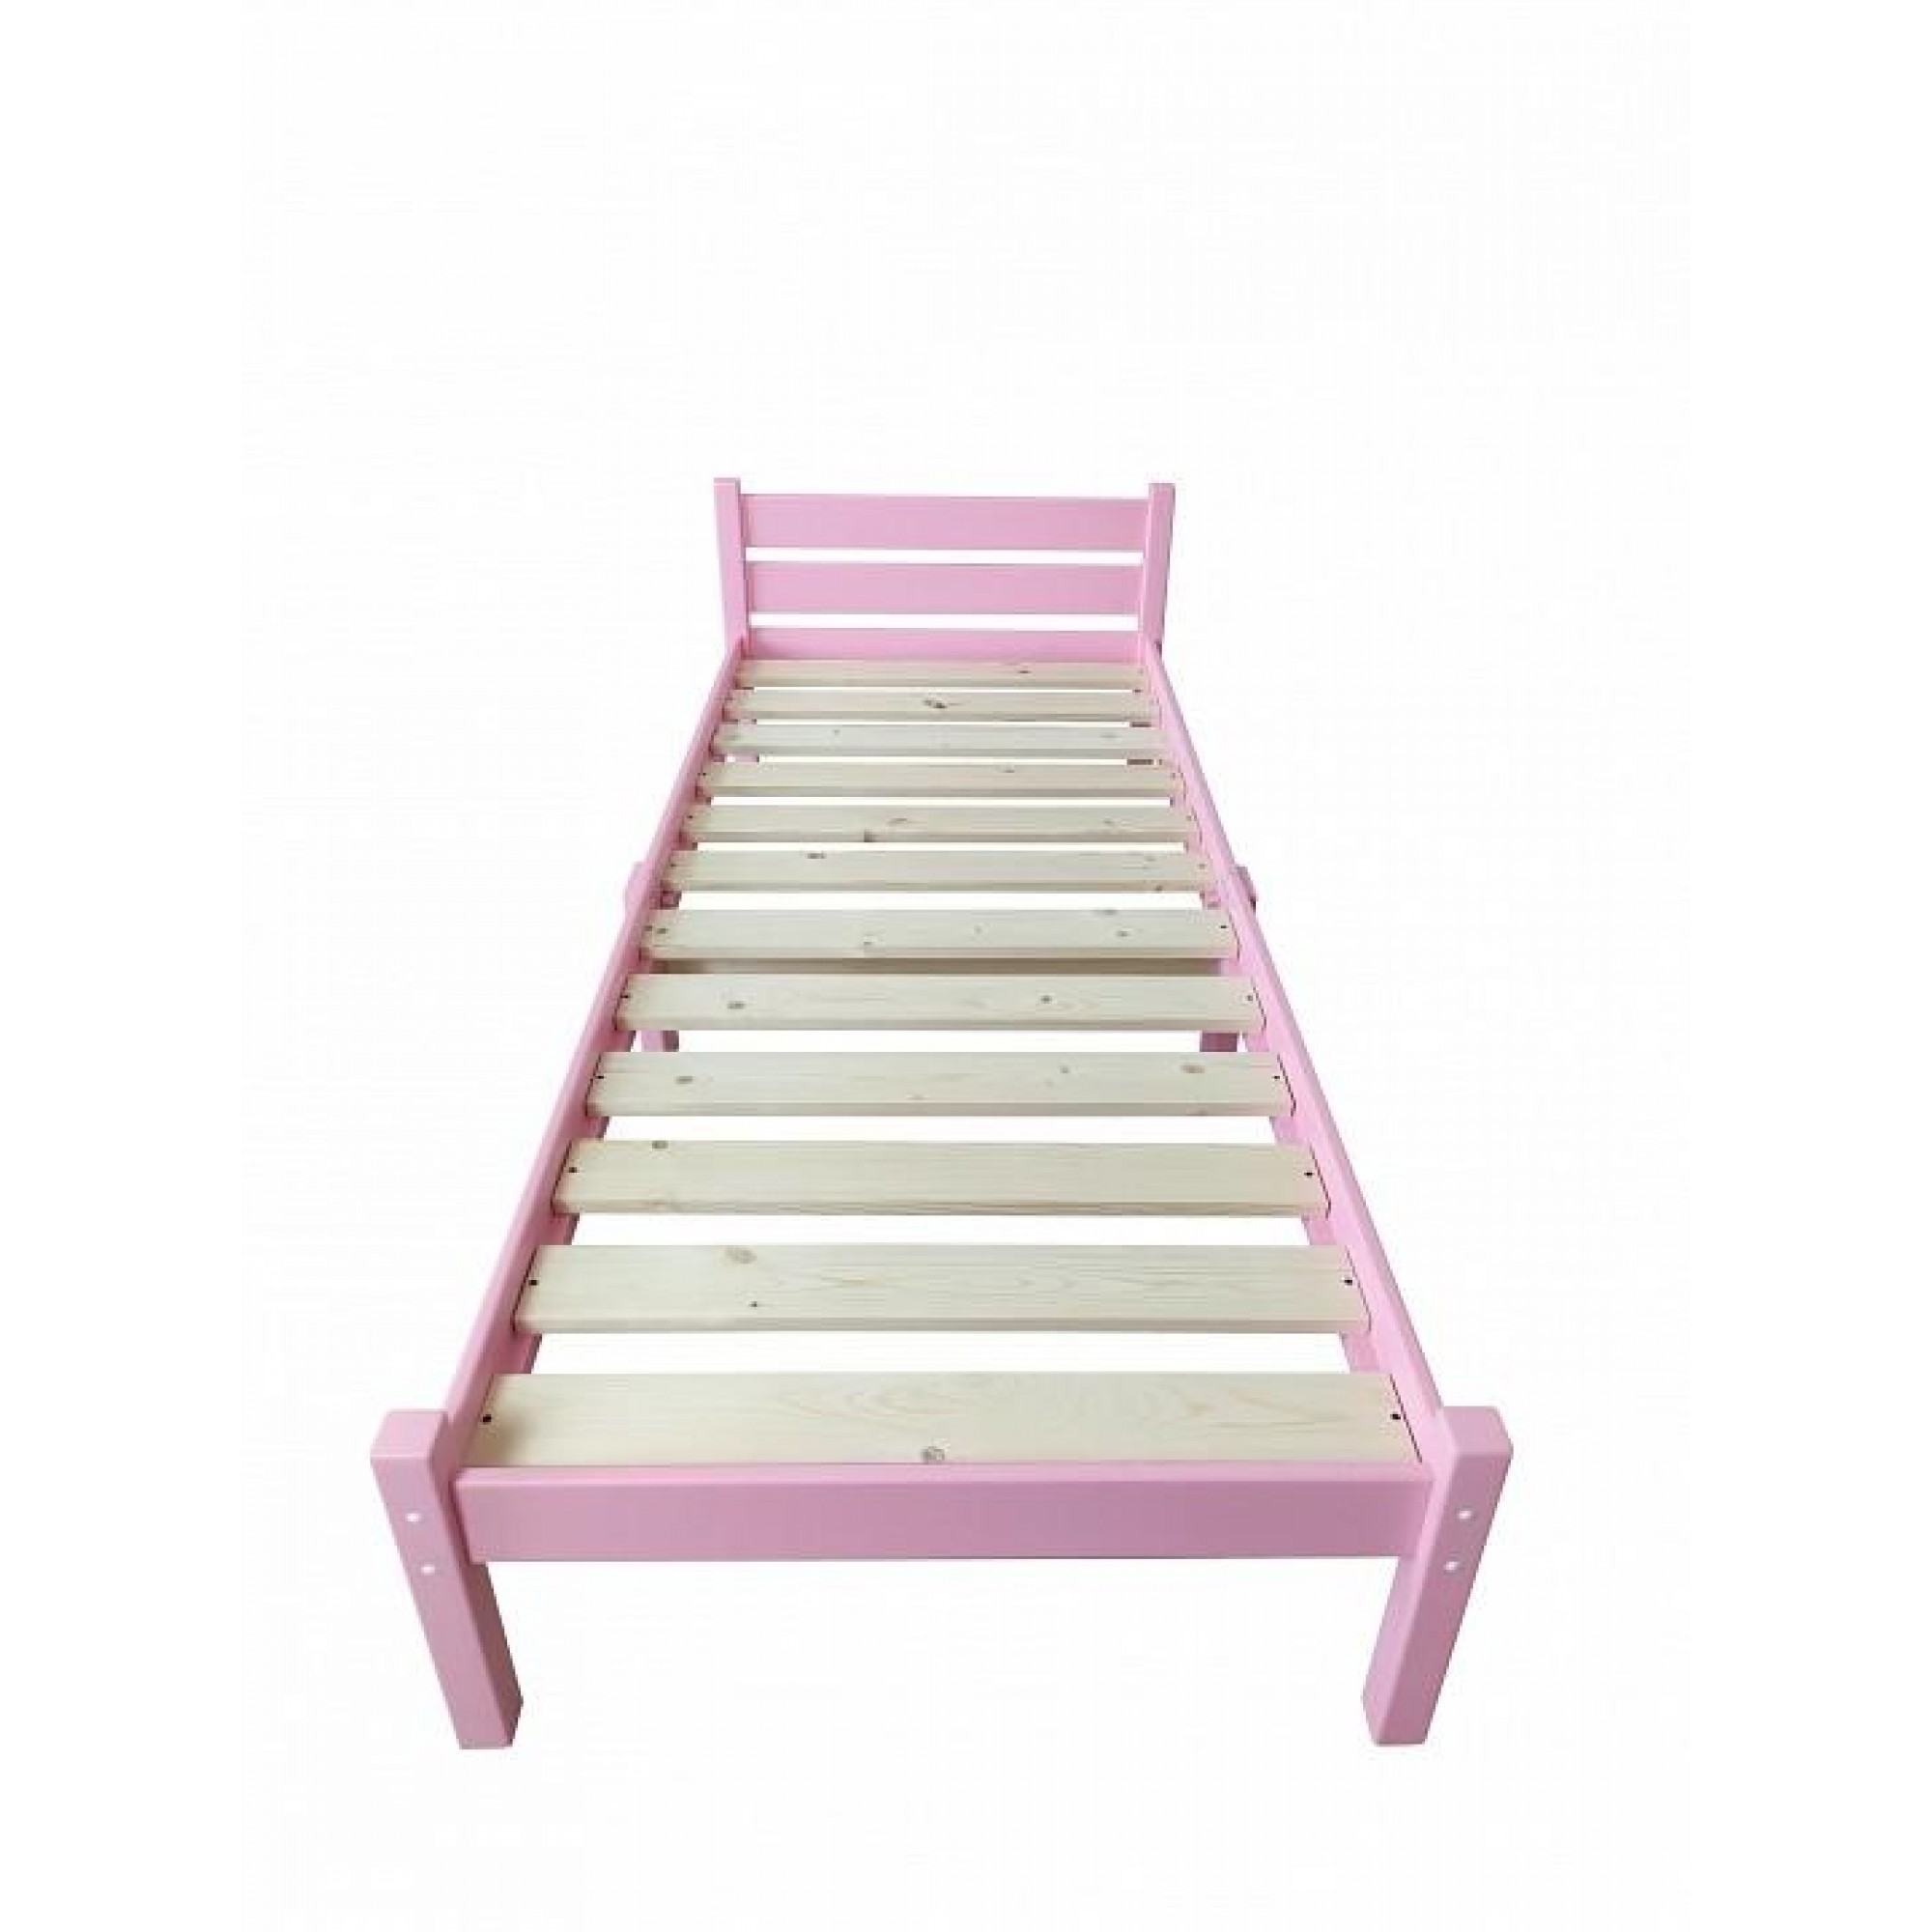 Кровать односпальная Компакт 2000x700 розовый    SLR_kompakt70roz